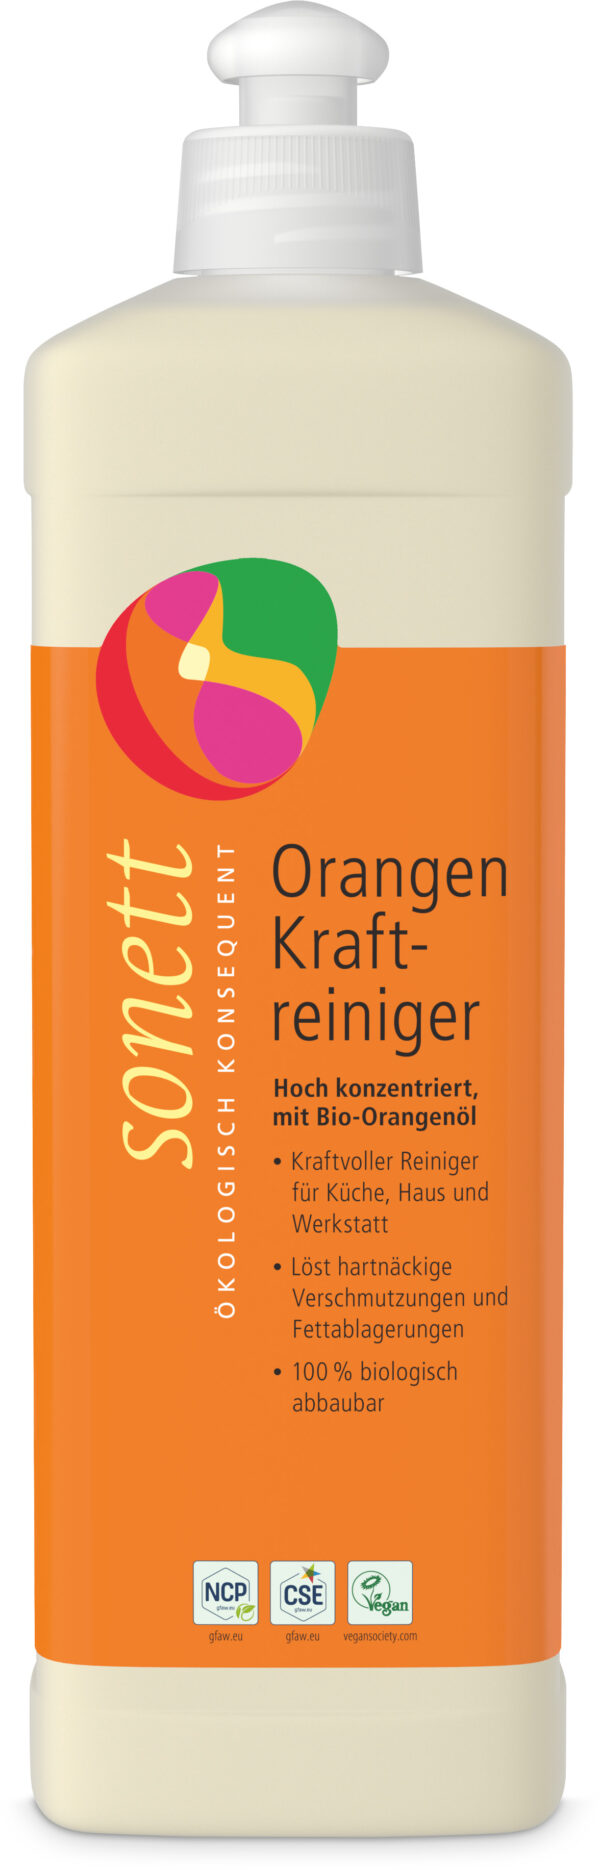 SONETT Orangen Kraftreiniger 6 x 0,5l